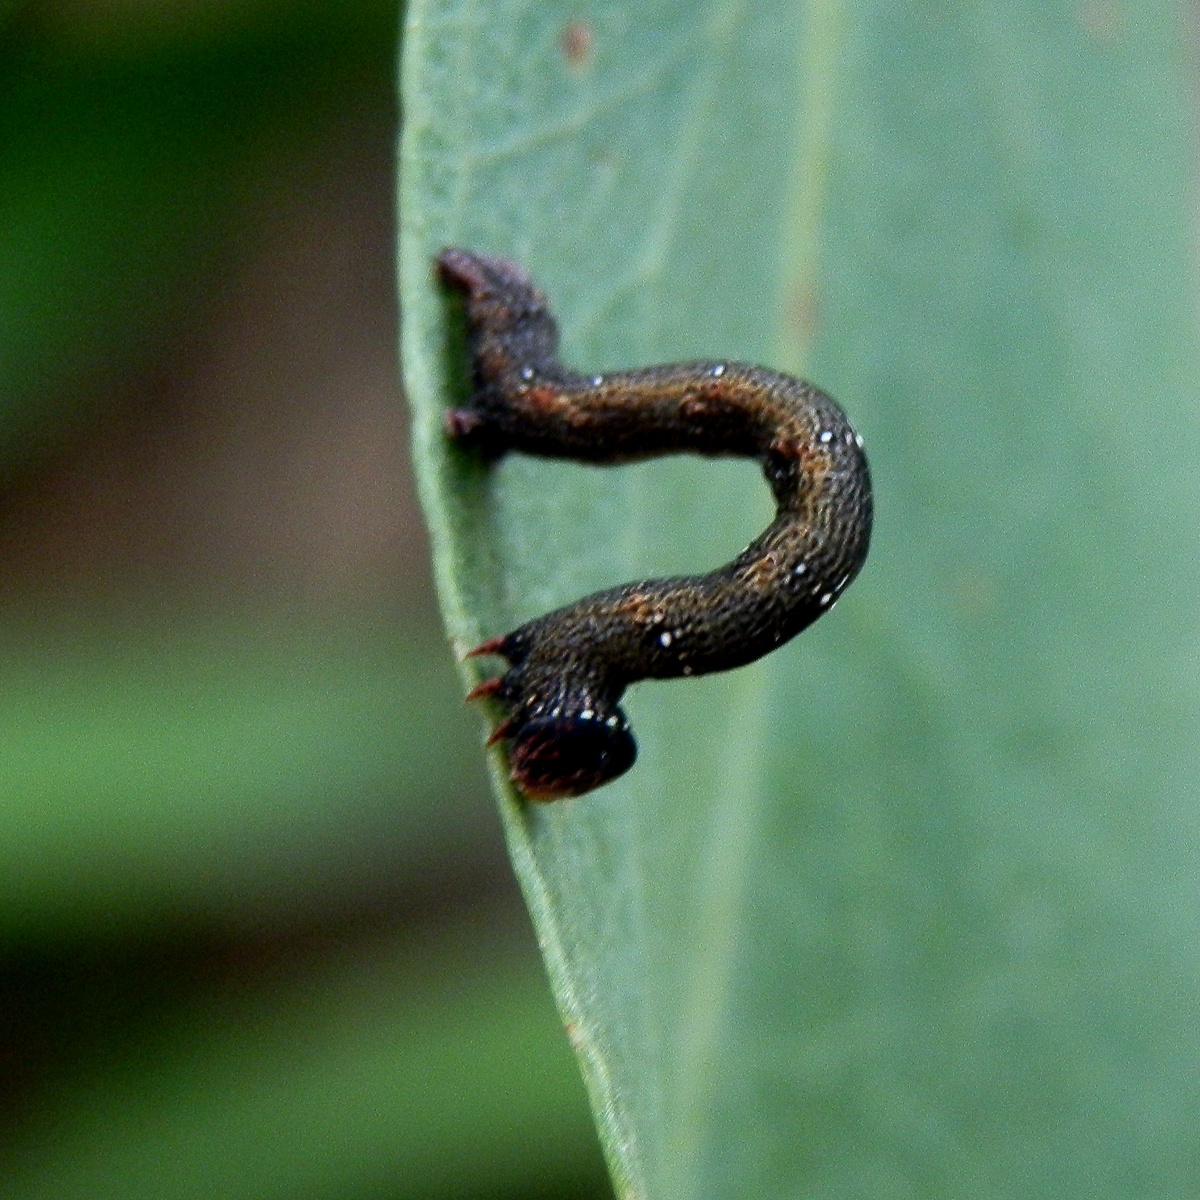 Sinister Moth caterpillar - early instar